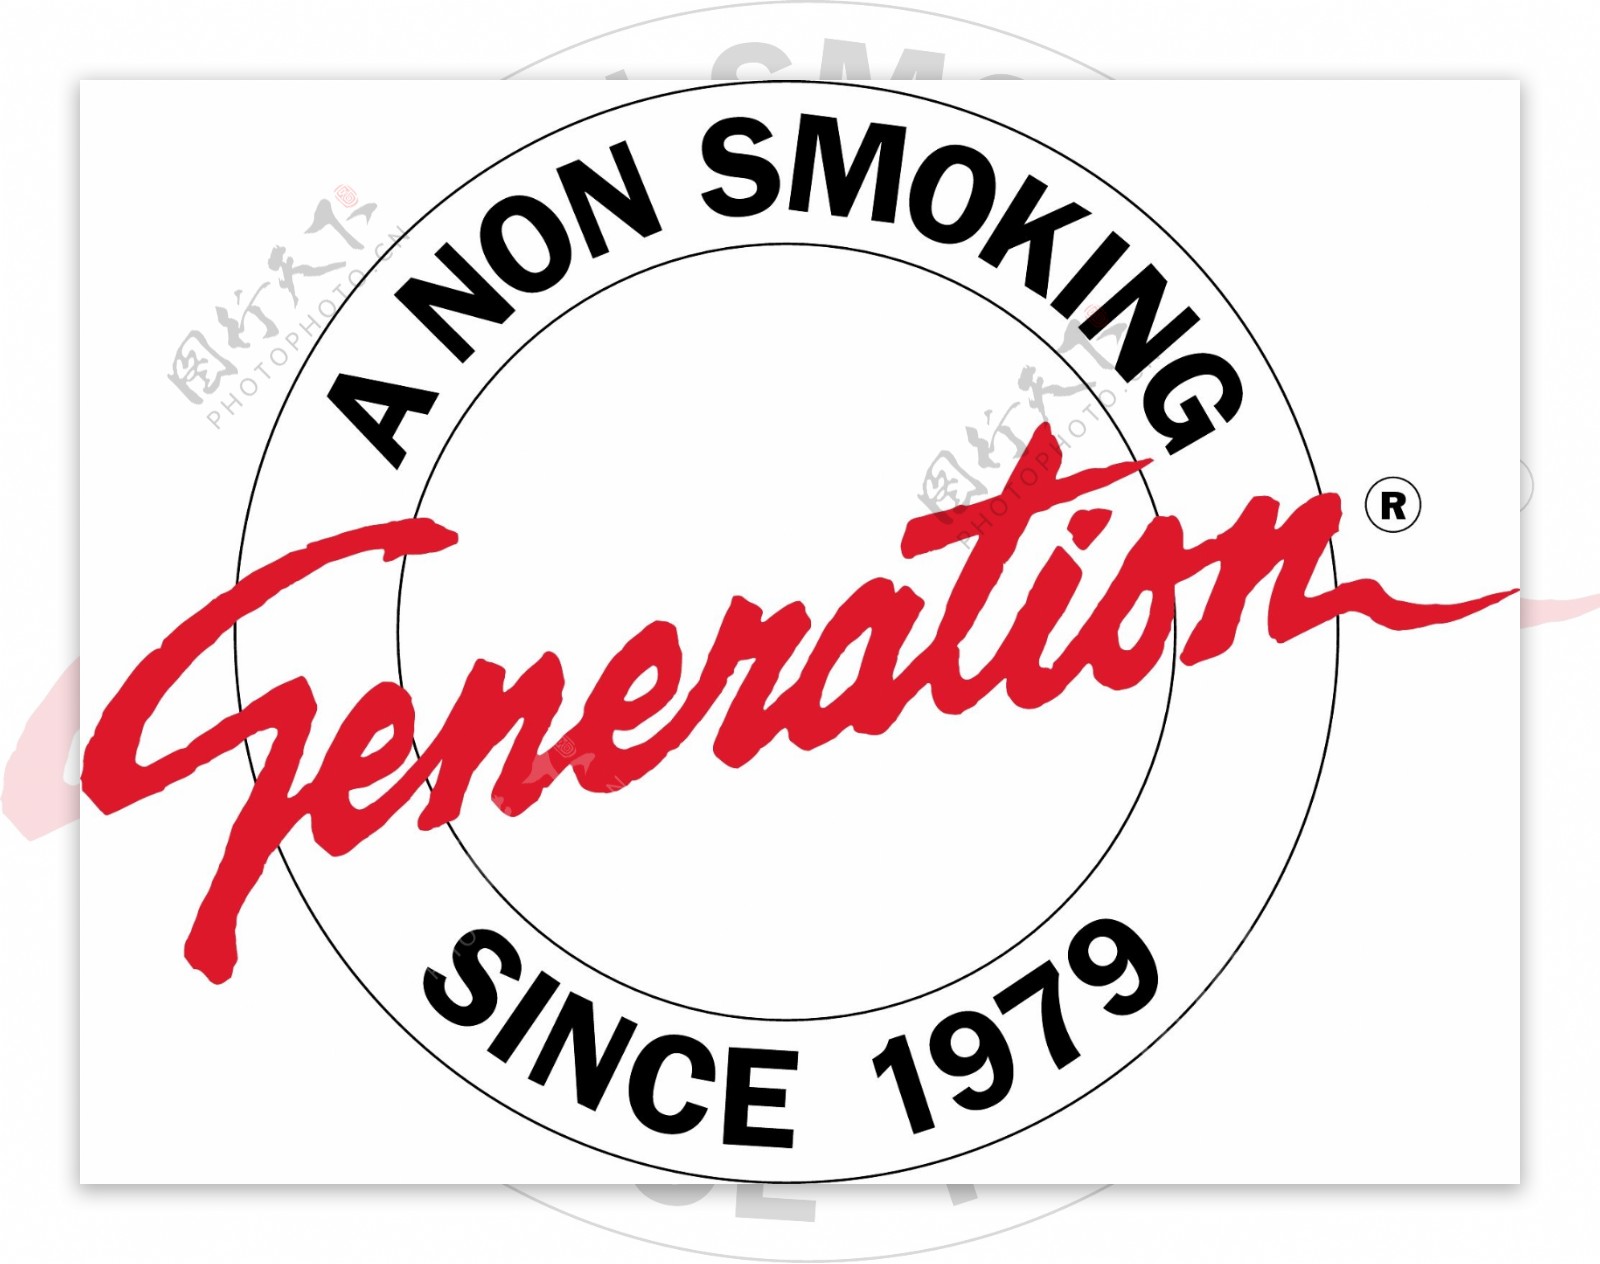 非吸烟区的一代